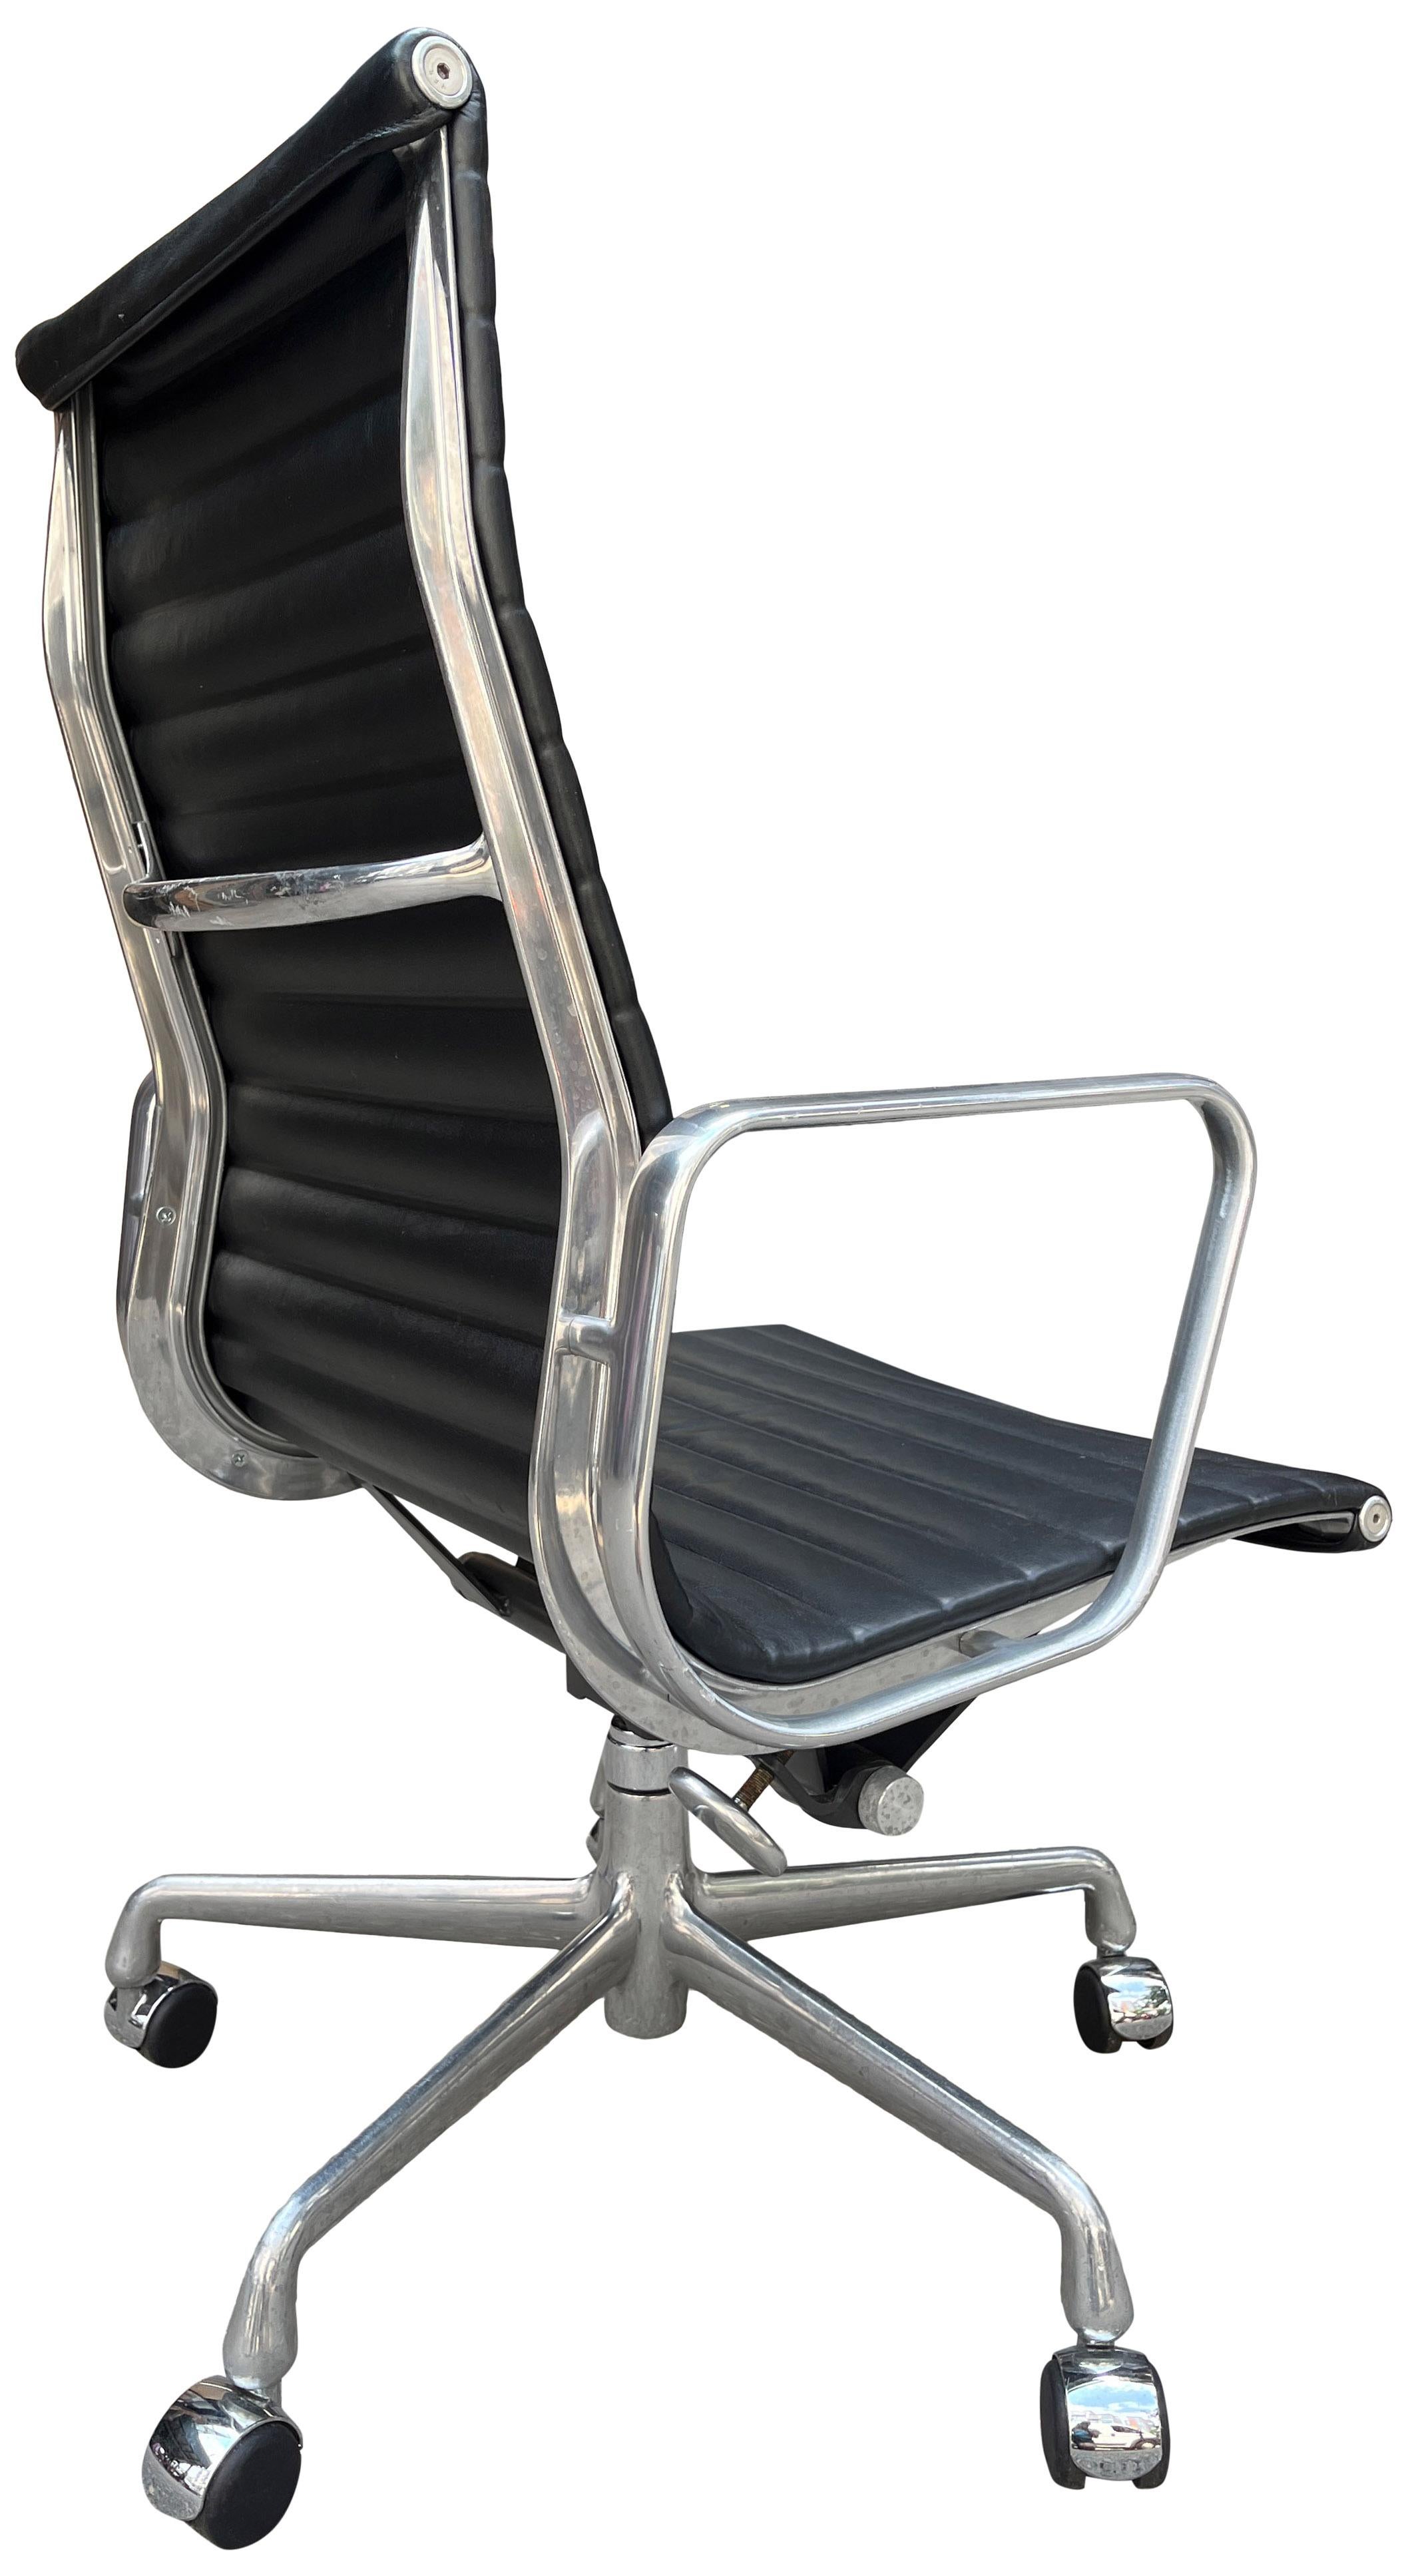 

Eames for Herman Miller Aluminum Group Stühle aus hochwertigem schwarzem Plüschleder mit hoher Rückenlehne. 
Eine Ikone des Mid-Century-Modern-Designs, die auch heute noch produziert wird. Manuelle Höhe und Neigung. 50. Jahrestag Zugabe